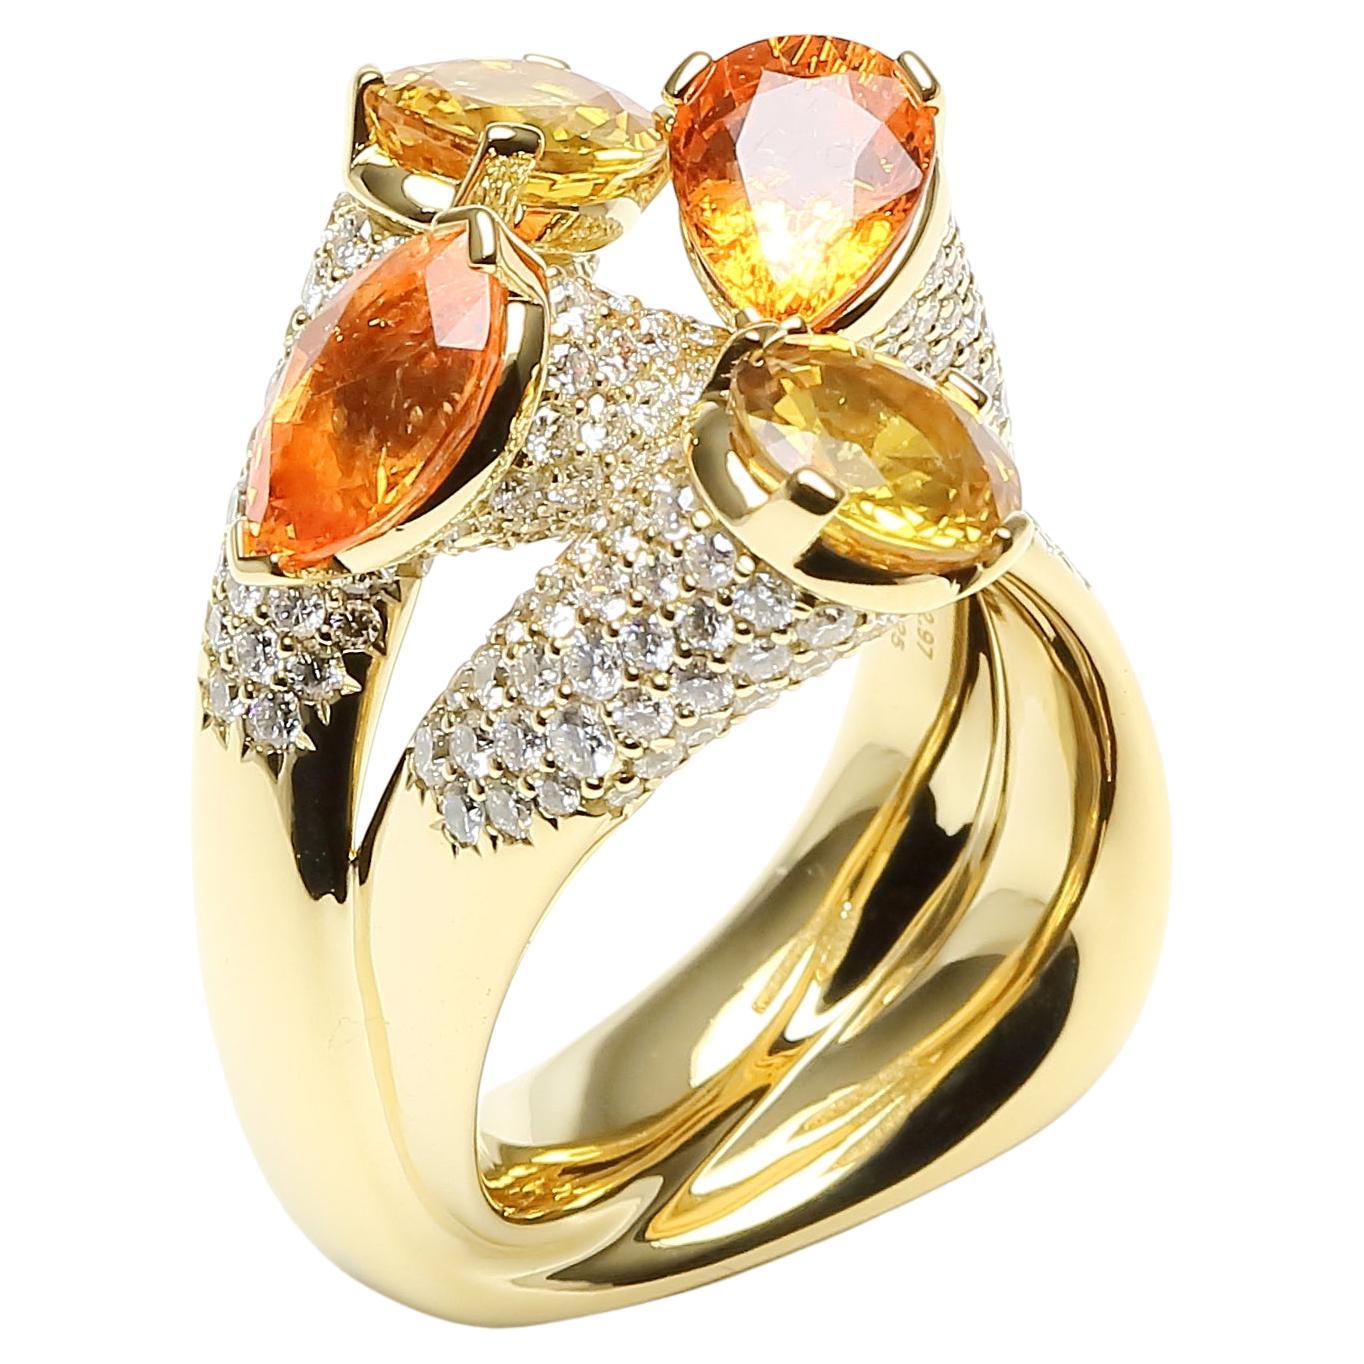 Einzigartiger Cocktail-Ring aus 18 Karat Gelbgold mit Diamanten, orange-gelbem Saphir im Angebot